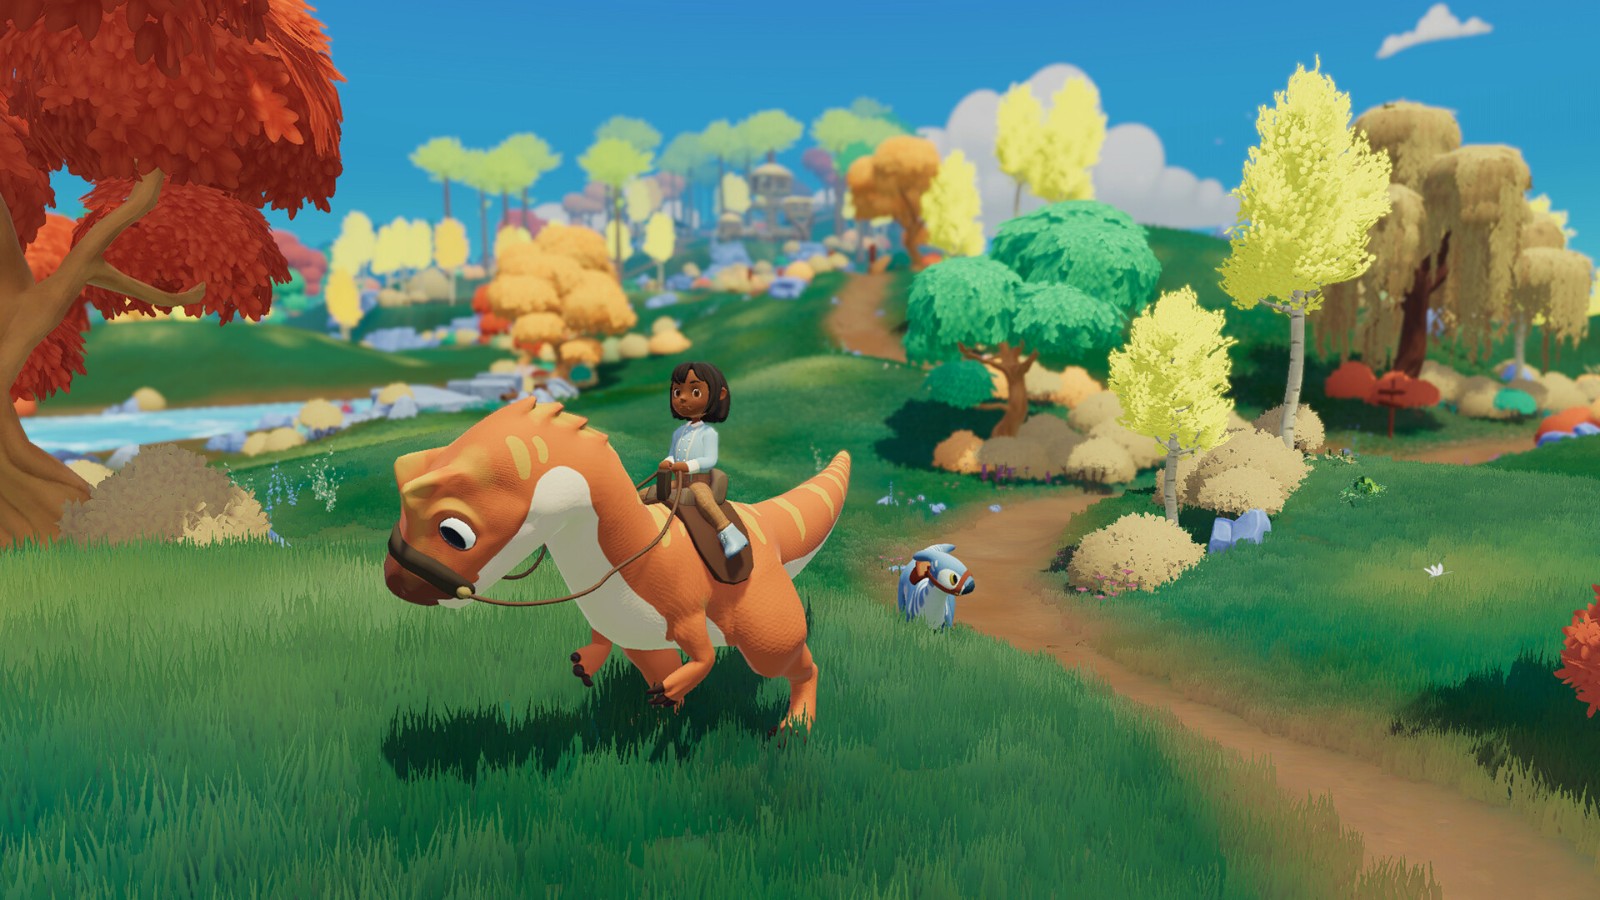 农场模拟游戏《Paleo Pines》今秋发售 登陆全平台 二次世界 第2张